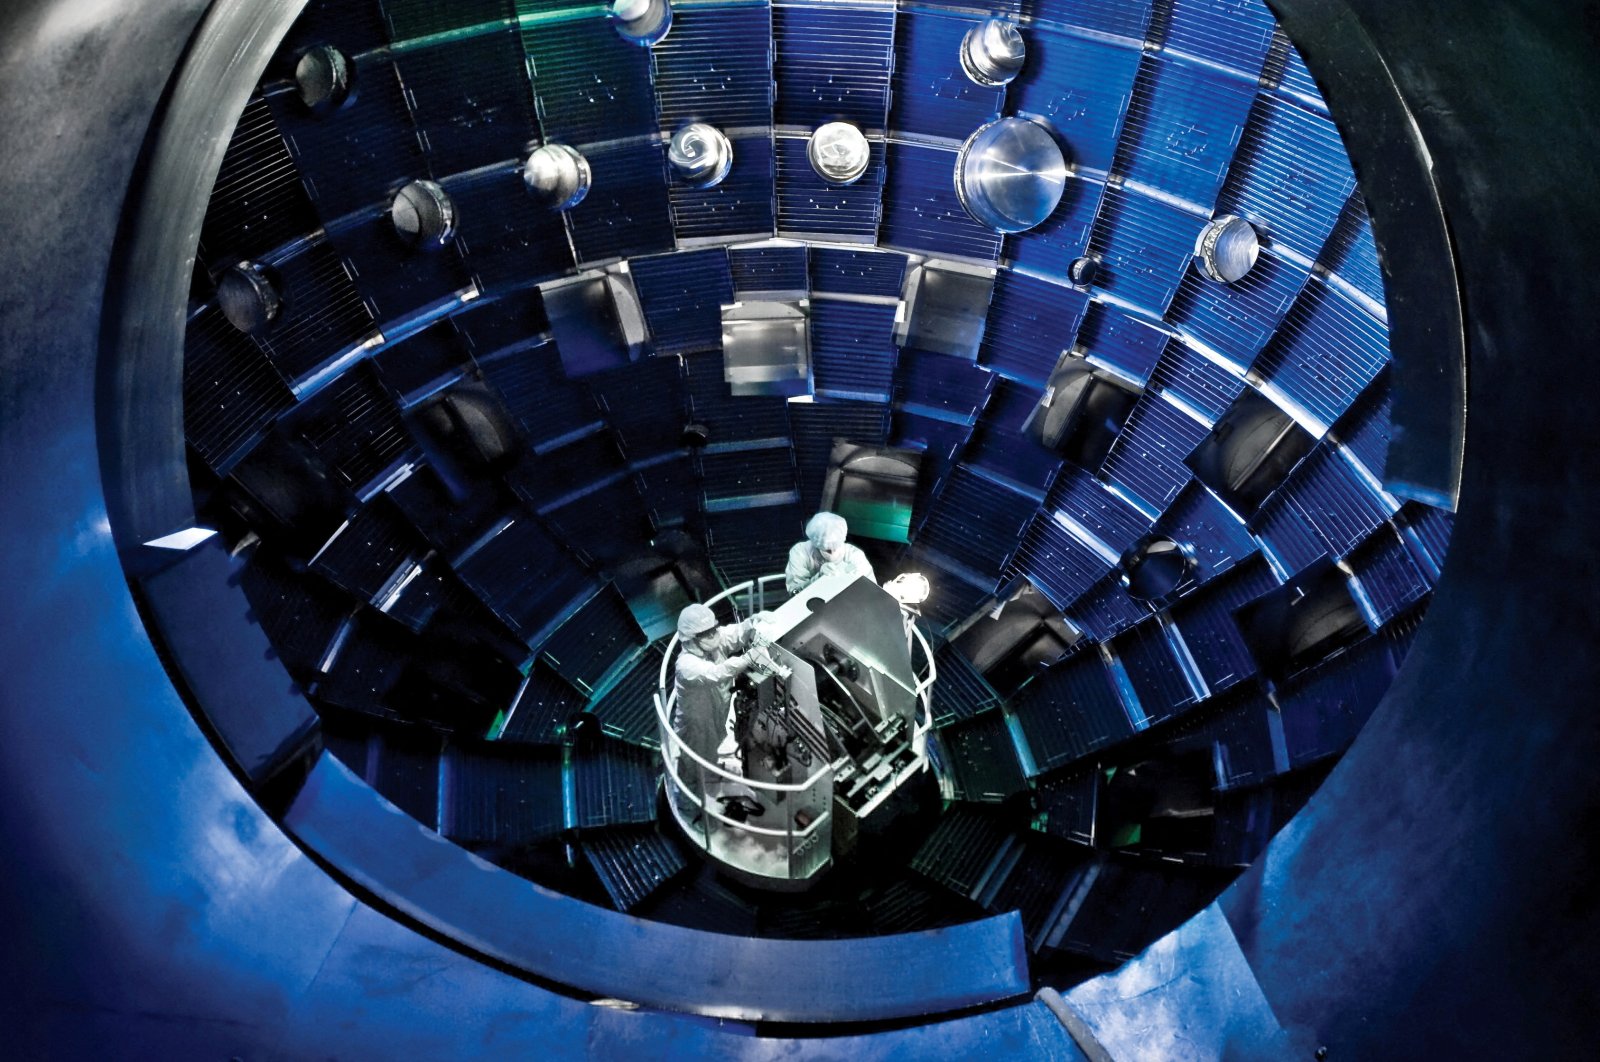 Terobosan fusi: Memanfaatkan kekuatan bintang untuk energi bersih?